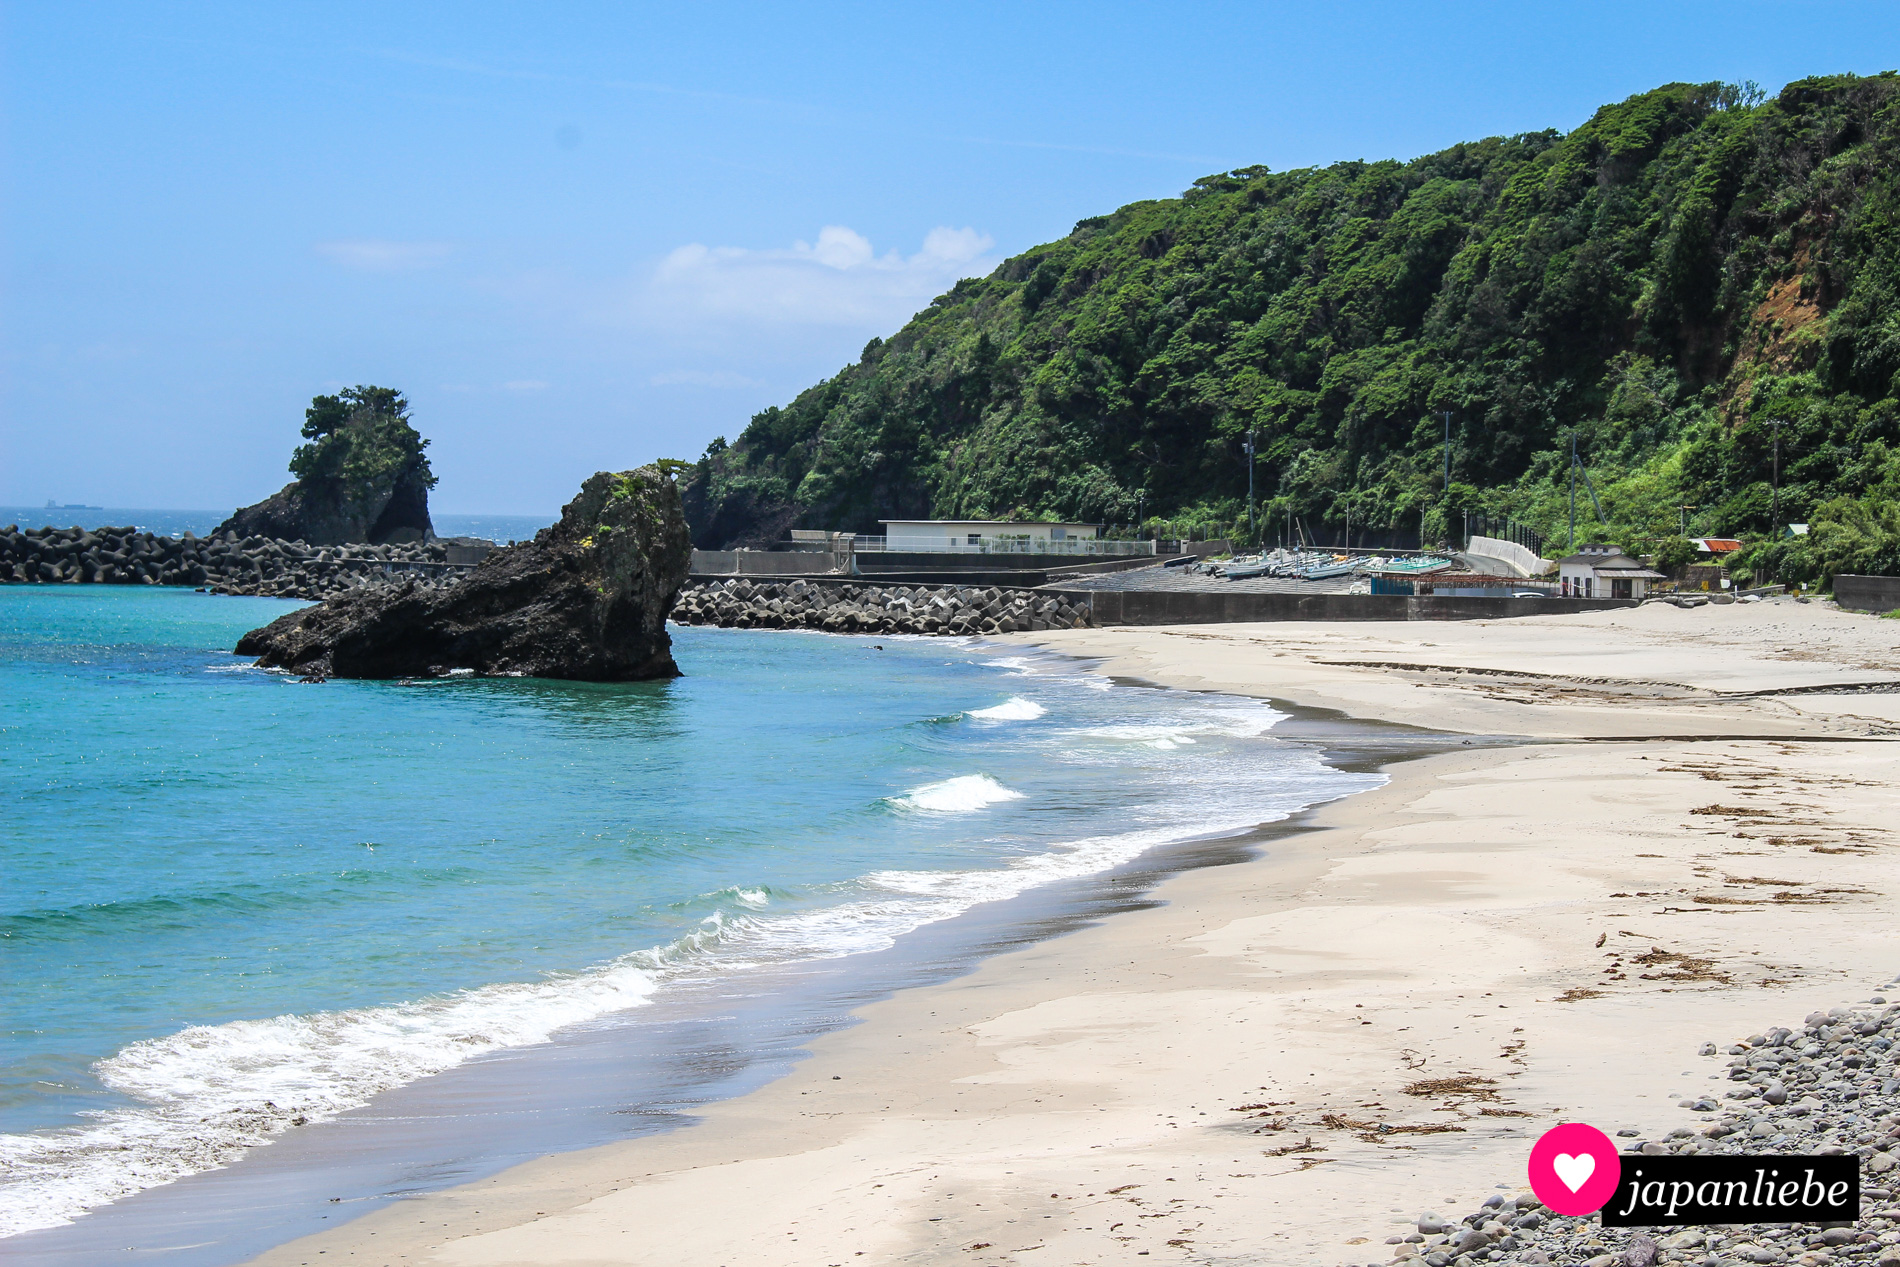 Weißer Sand trifft türkisblaues Meer. Dei Strände der Izu-Halbinsel, vor allem in der Nähe von Shimoda, sind beliebte Treffpunkte für Wassersportler.